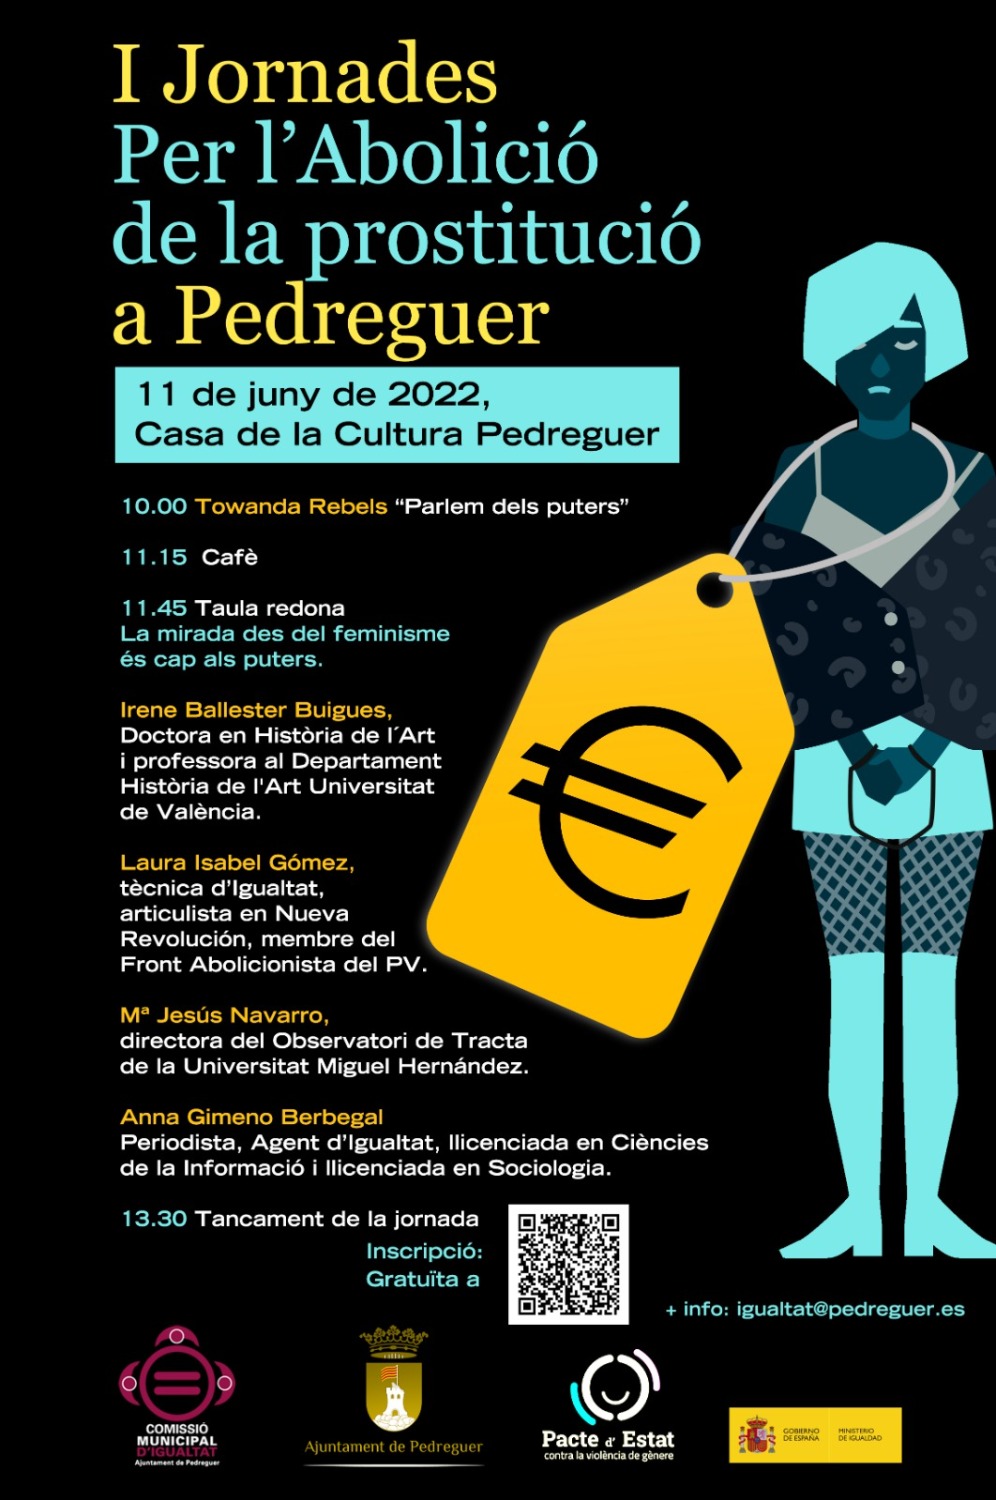 Pedreguer celebra el 11 de junio una jornada sobre la abolición de la prostitución